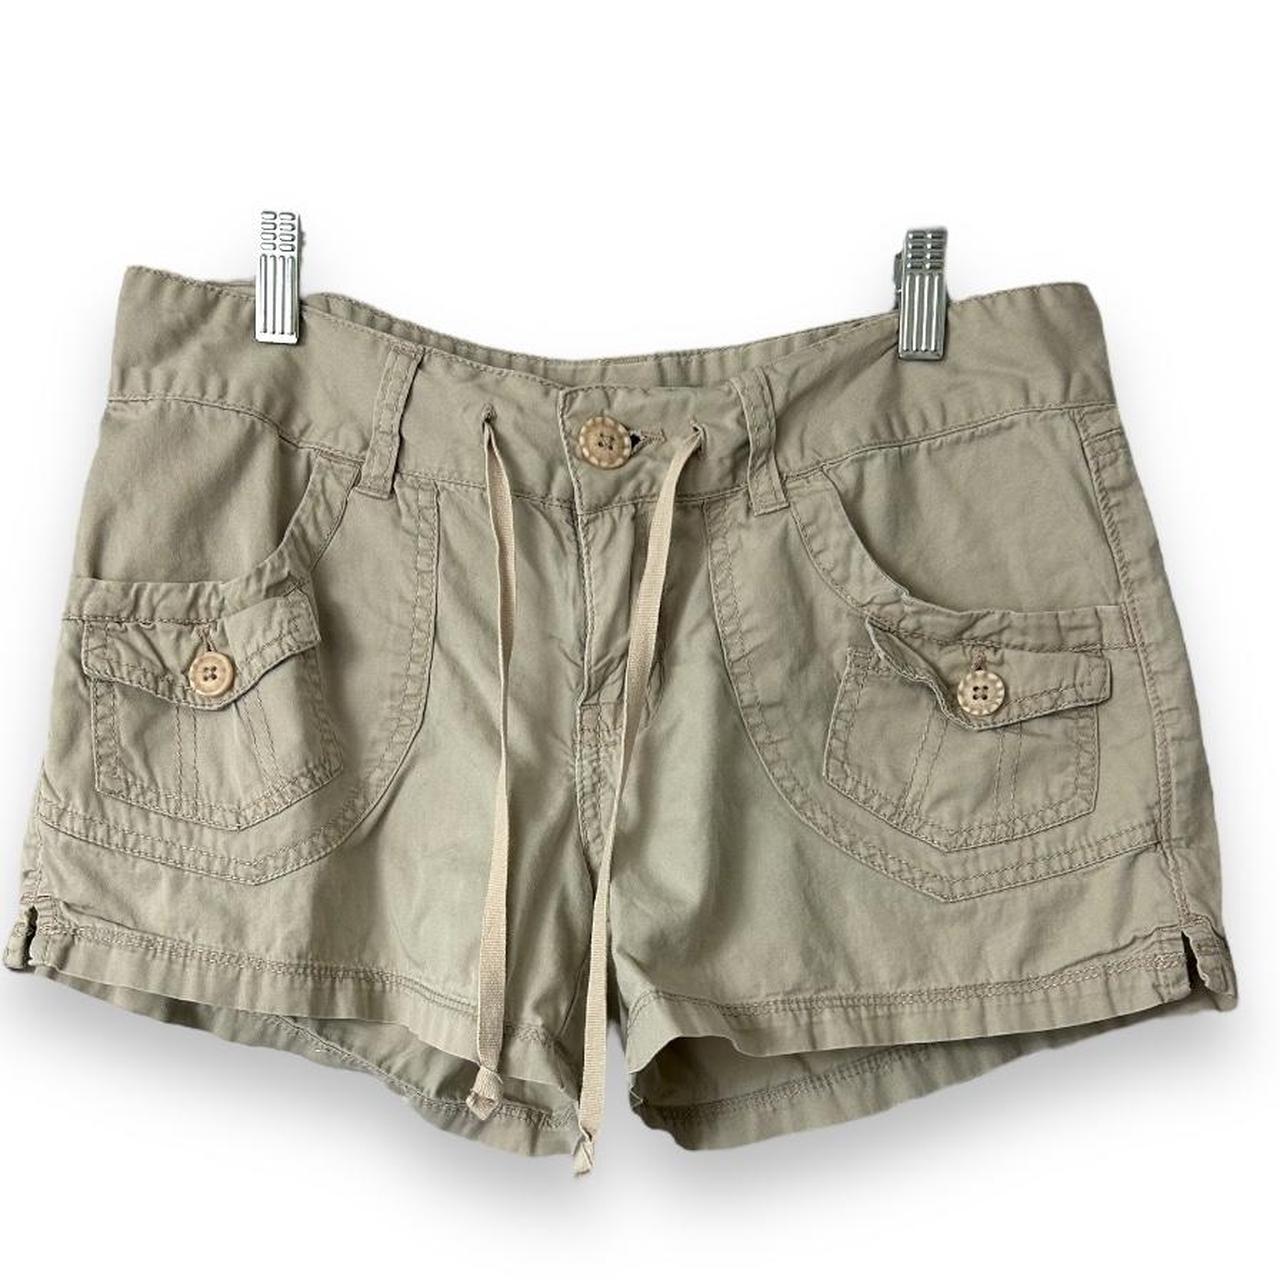 Union bay shorts, 7 Measurements 14” waist 7.5”... - Depop